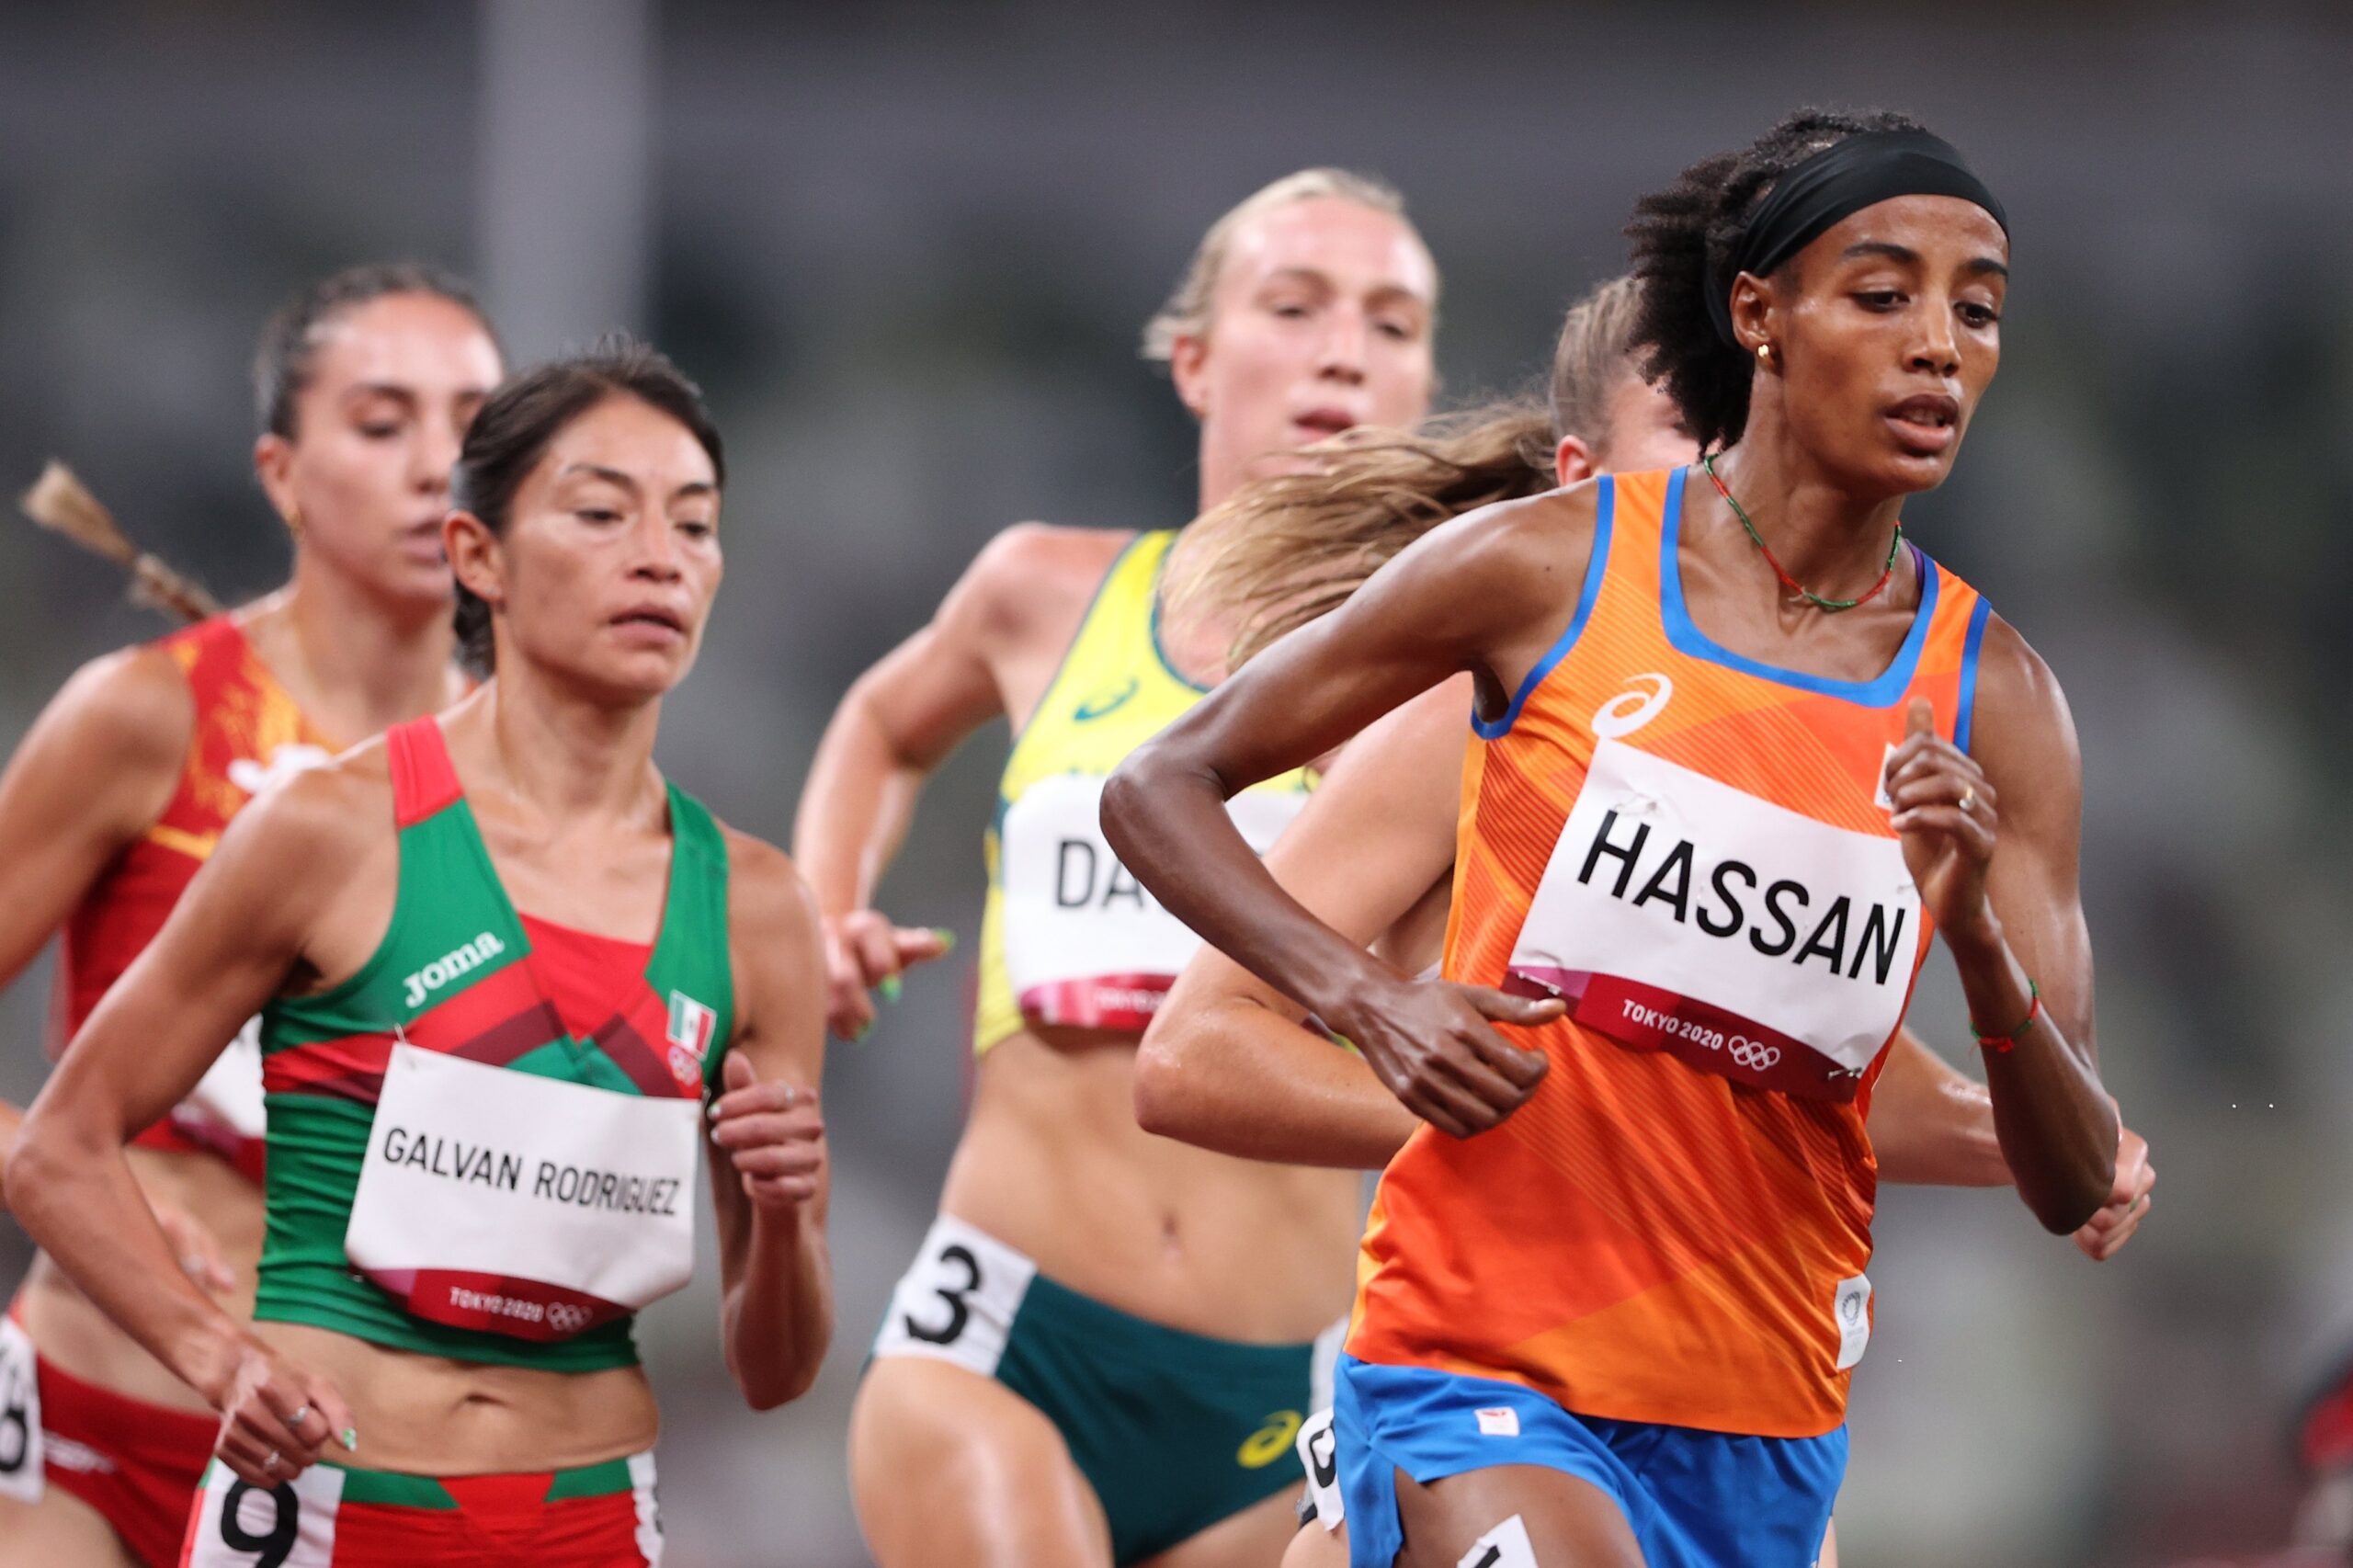 5000 metros: Sifan Hassan clasifica y sigue como favorita